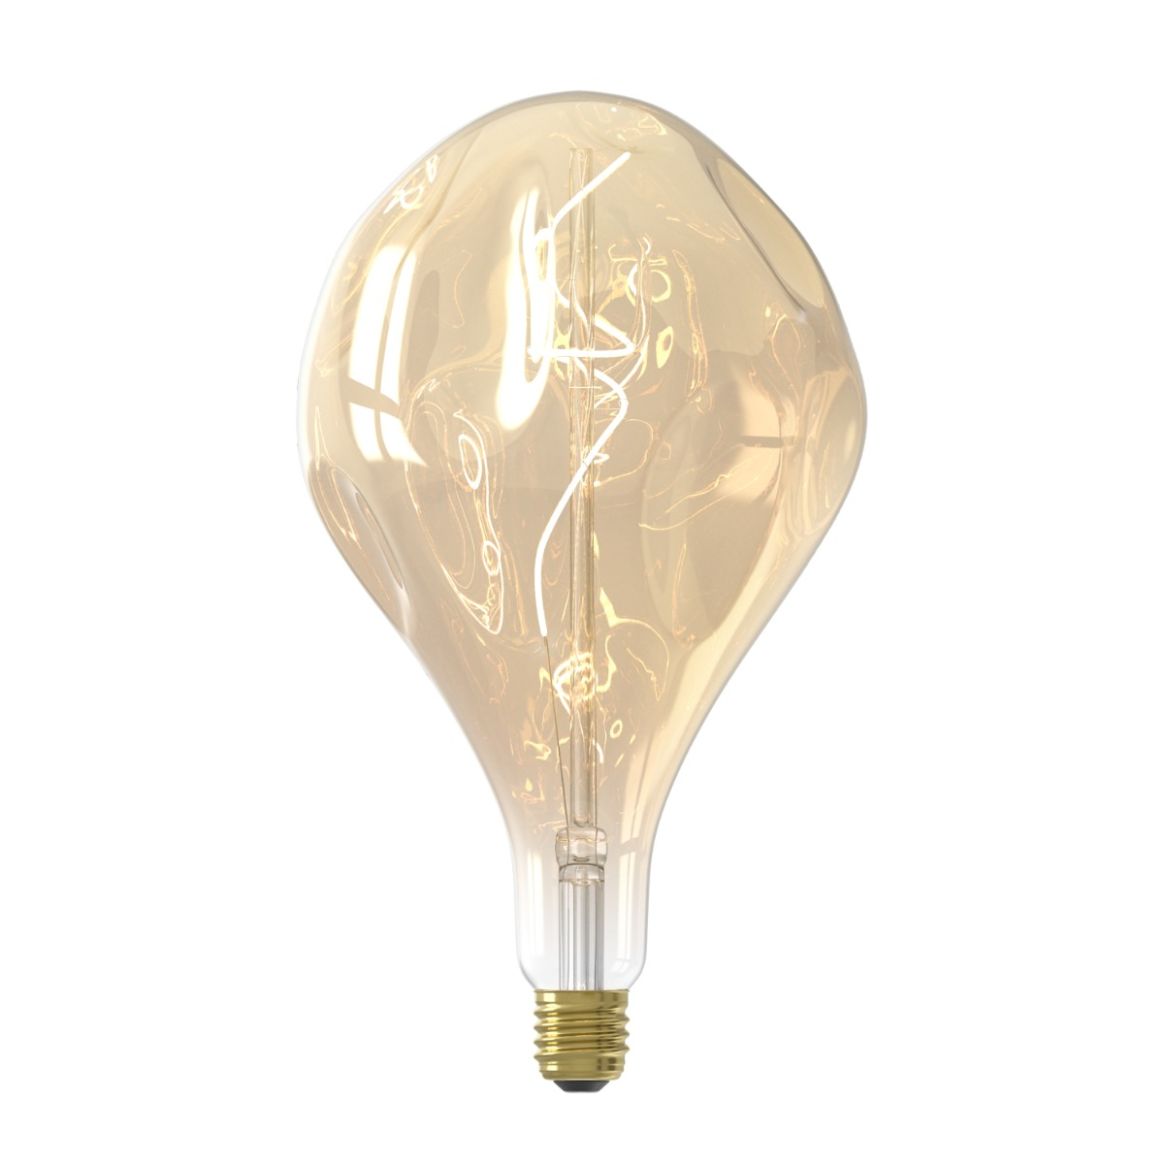 Ampoule filament led - miroir or doré - dimmable - 4w et 280 lumen